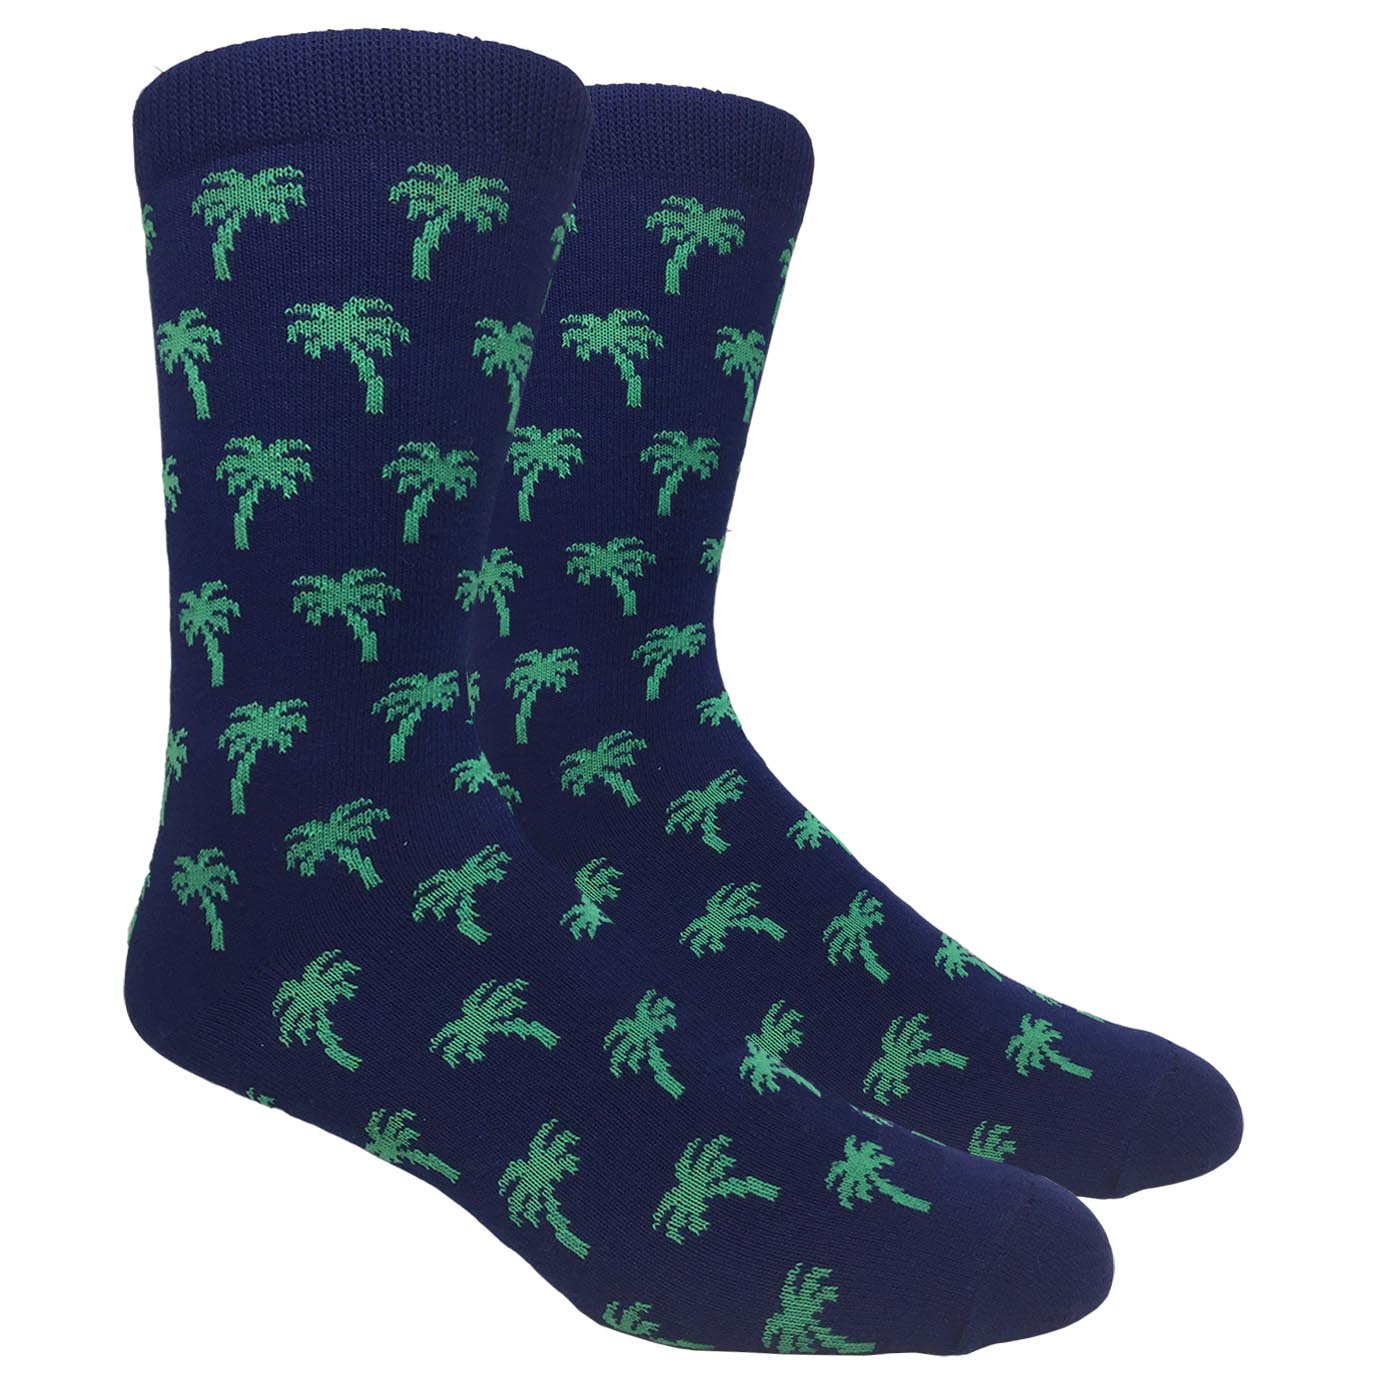 FineFit Black Label Novelty Socks - Navy Blue Palm Trees